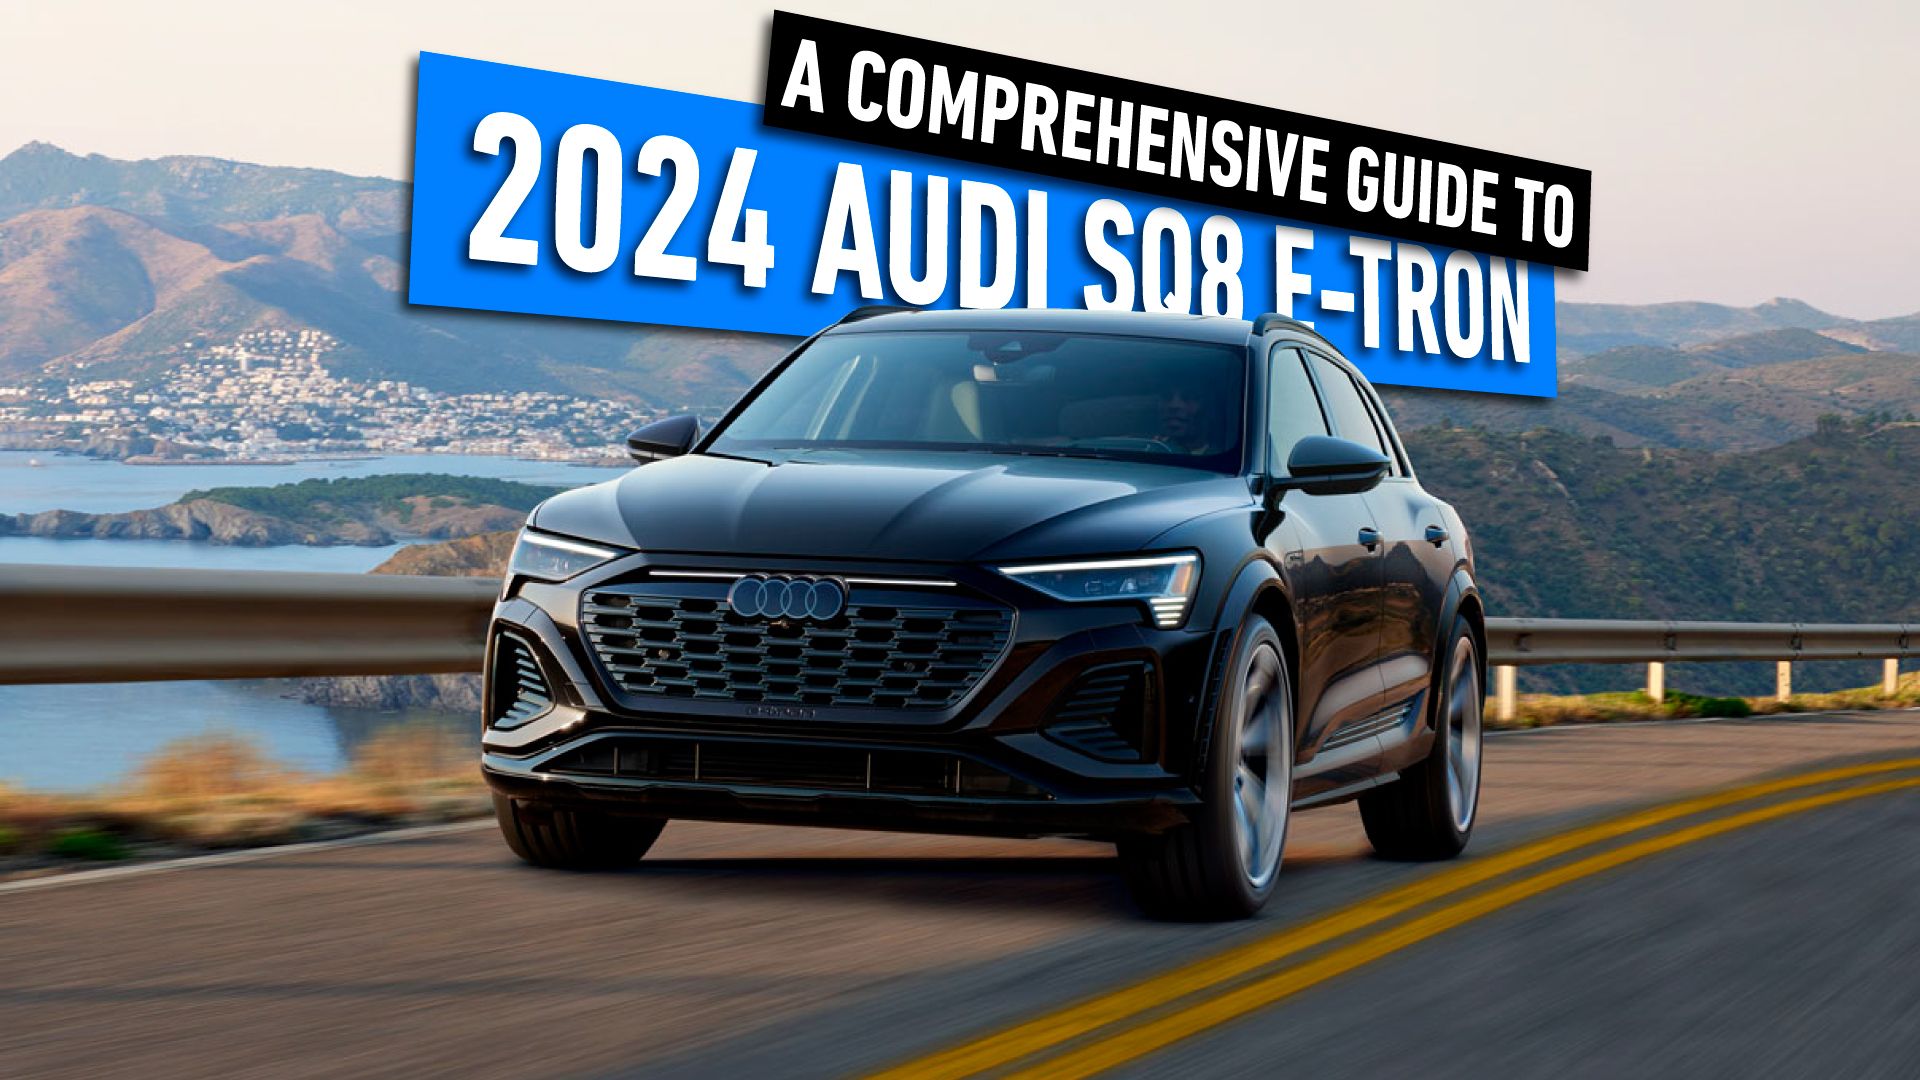 2024-Audi-SQ8-e-tron-A-Comprehensive-Guide